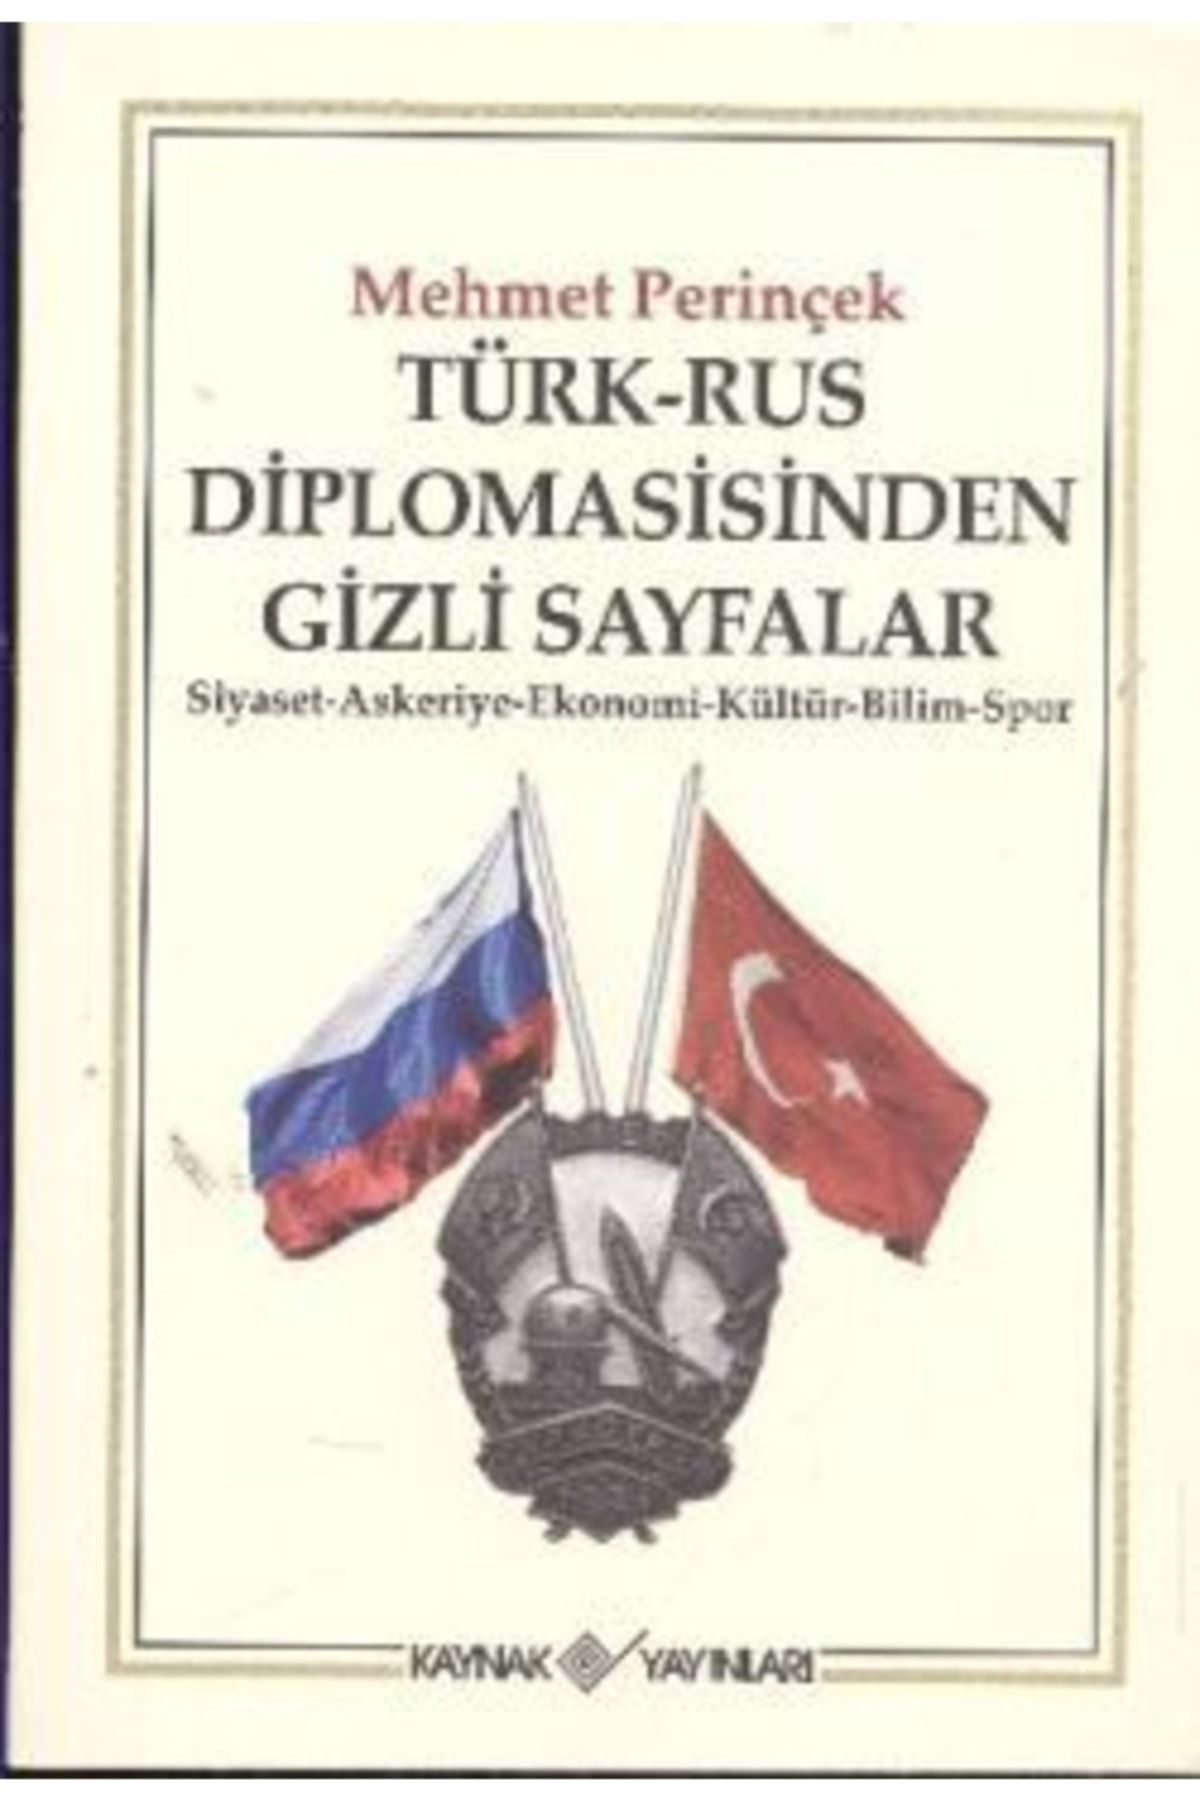 NO.8 HOUSE Türk-rus Diplomasisinden Gizli Sayfalar